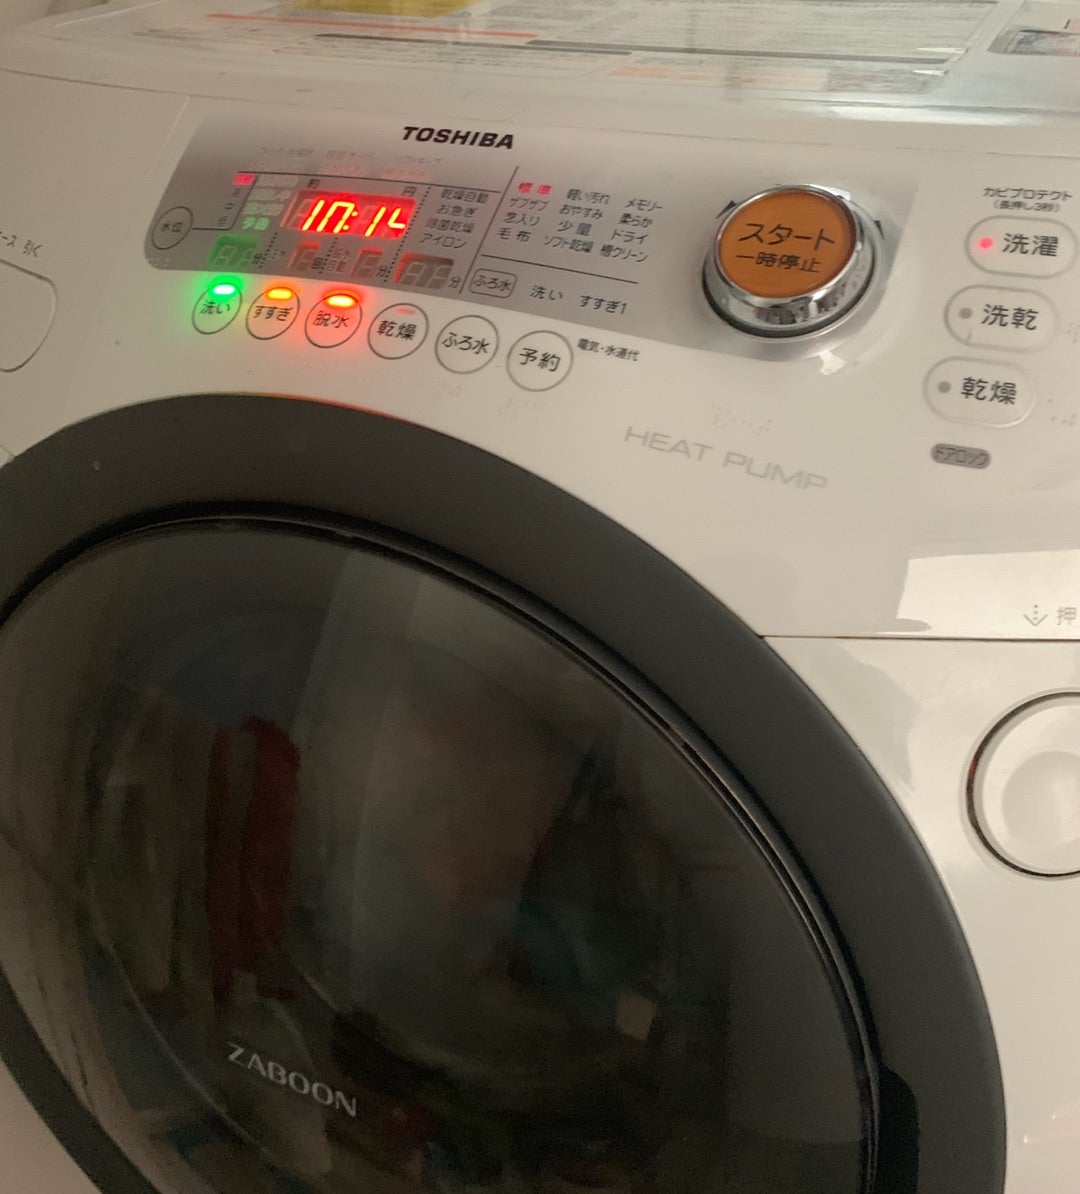 957円 超人気の 東芝 TOSHIBA ドラム式洗濯乾燥機 ザブーン ZABOON ドアロックスイッチ 42067327